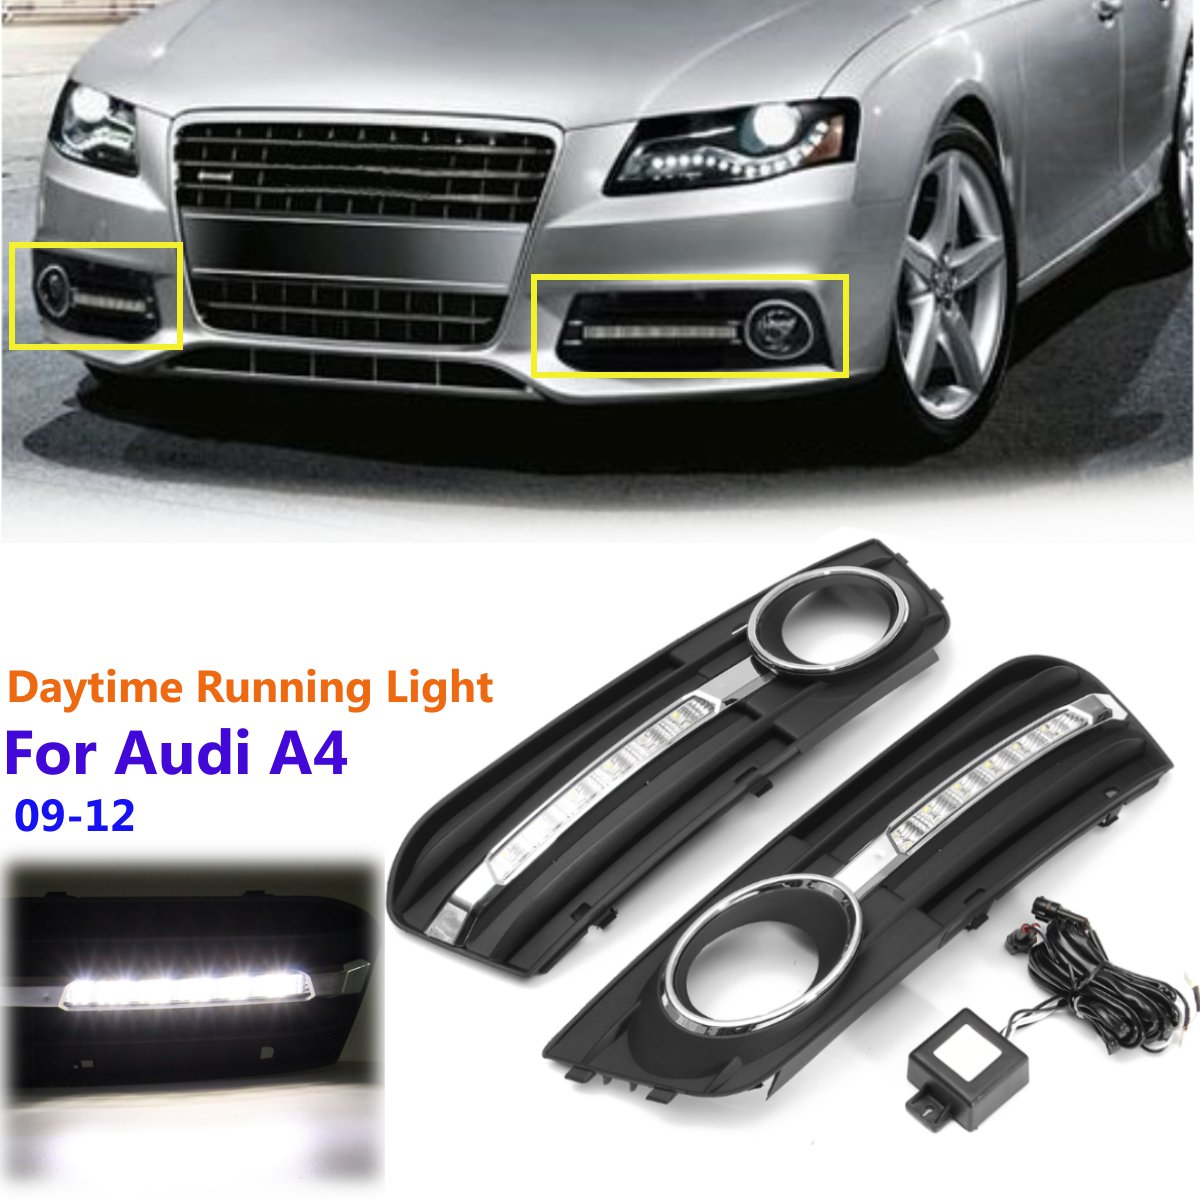 Taille : Left cache anti-brouillard pour Audi A4L 2009-2012. Projecteur antibrouillard 1 PC de pare-chocs avant gauche//droite pour pare-brouillard